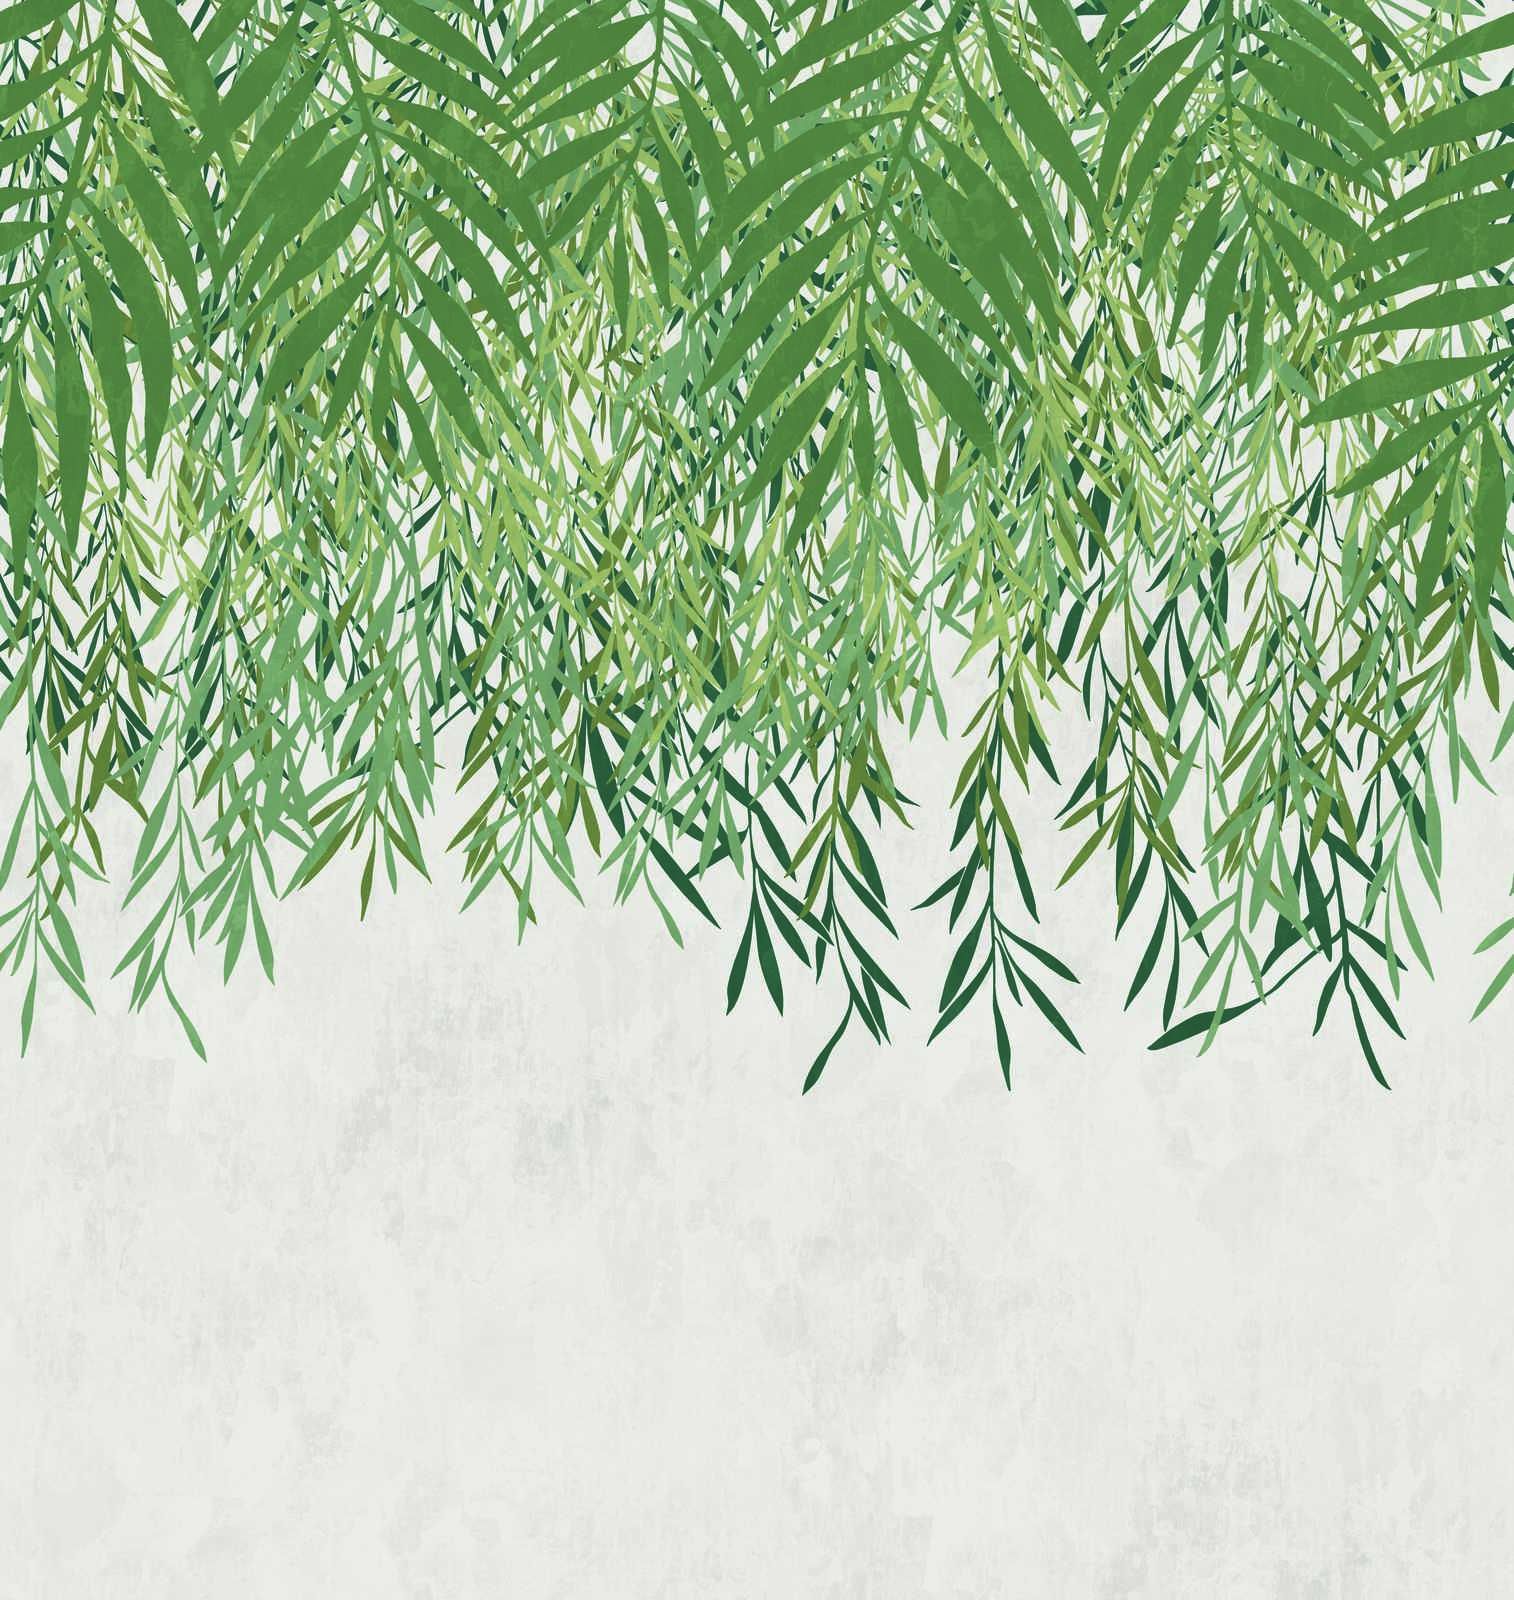             Vliestapete mit großem Blättermuster auf Betonoptik – Grün, Creme, Grau
        